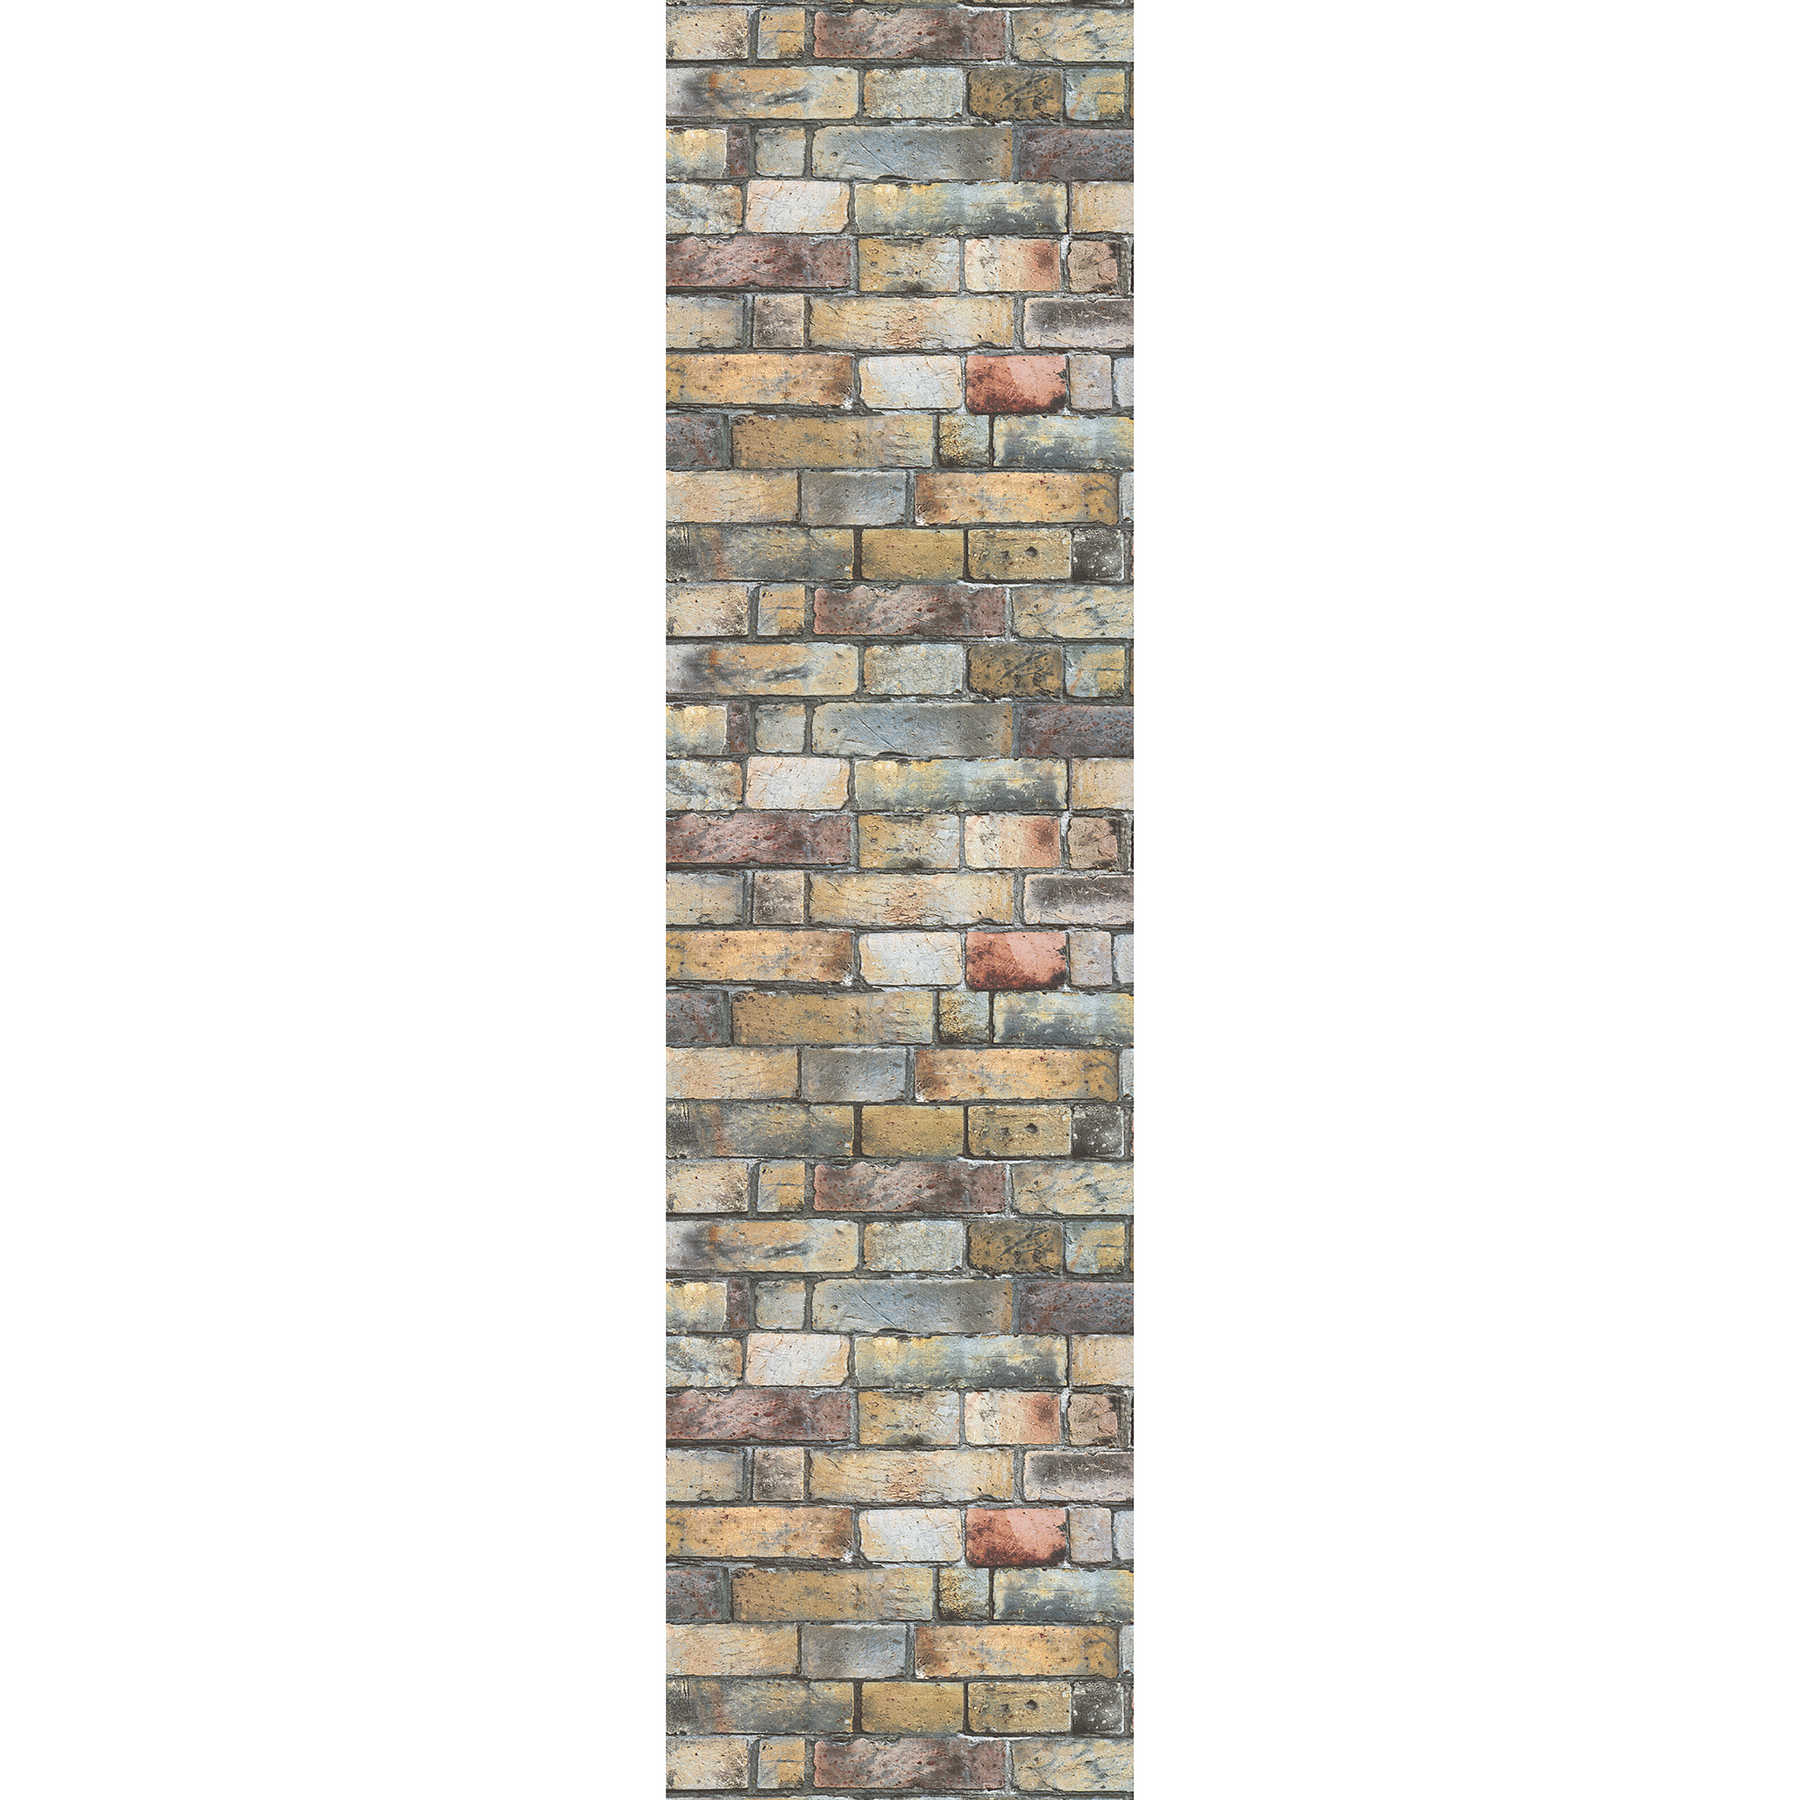 behang 3D stenen muur rustiek - beige, bruin, crème
